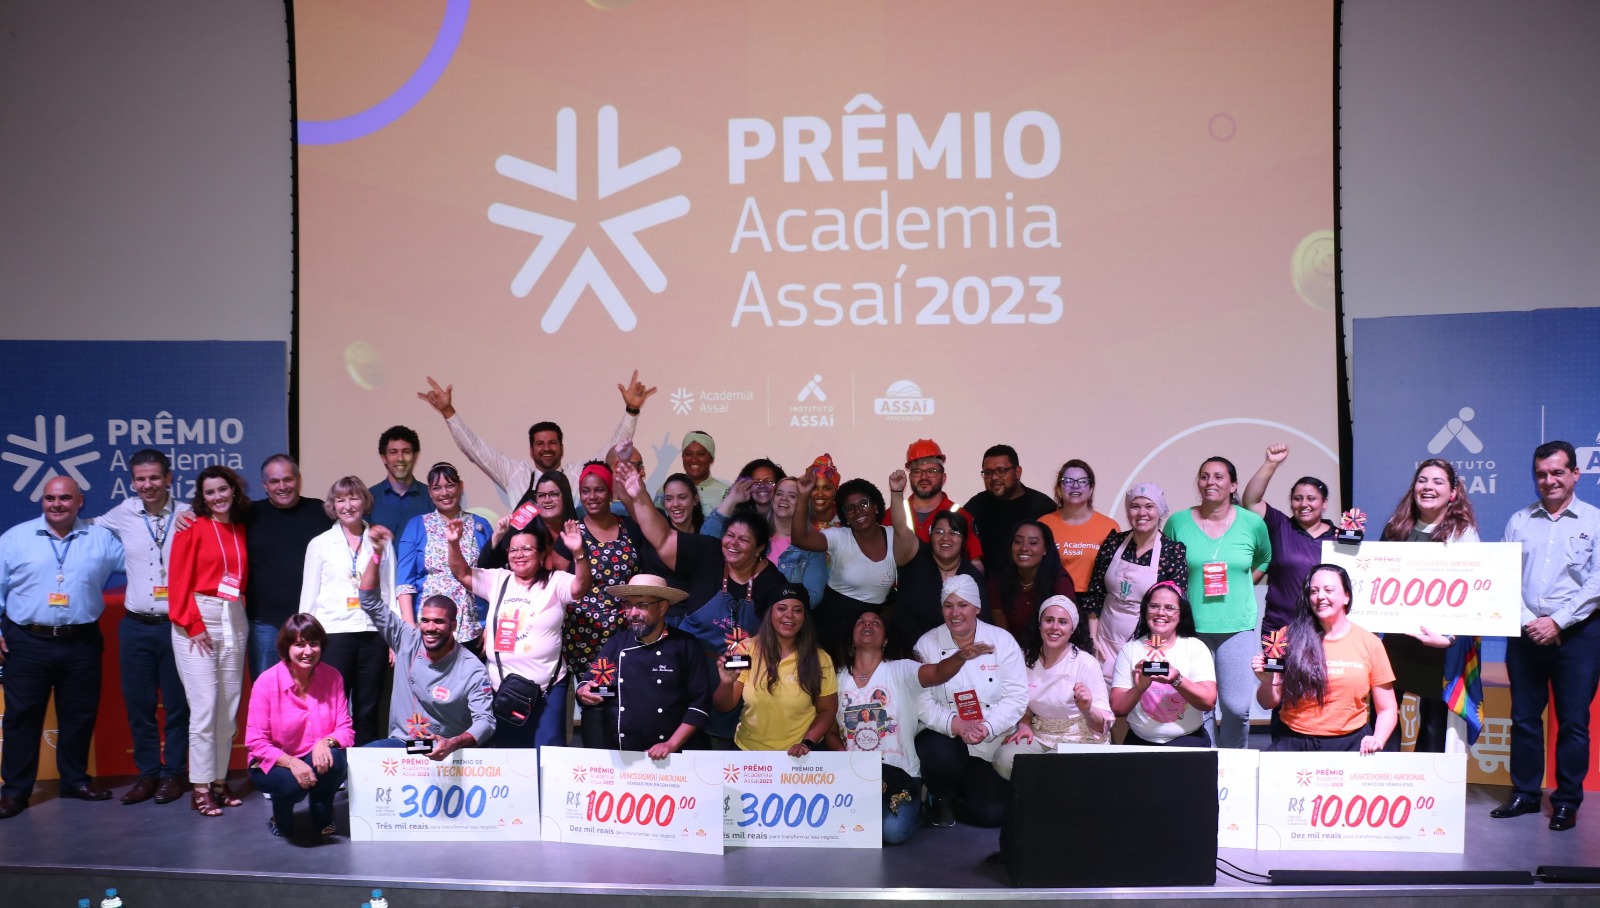 7ª edição do Prêmio Academia Assaí premiará 300 empreendedores da região Norte